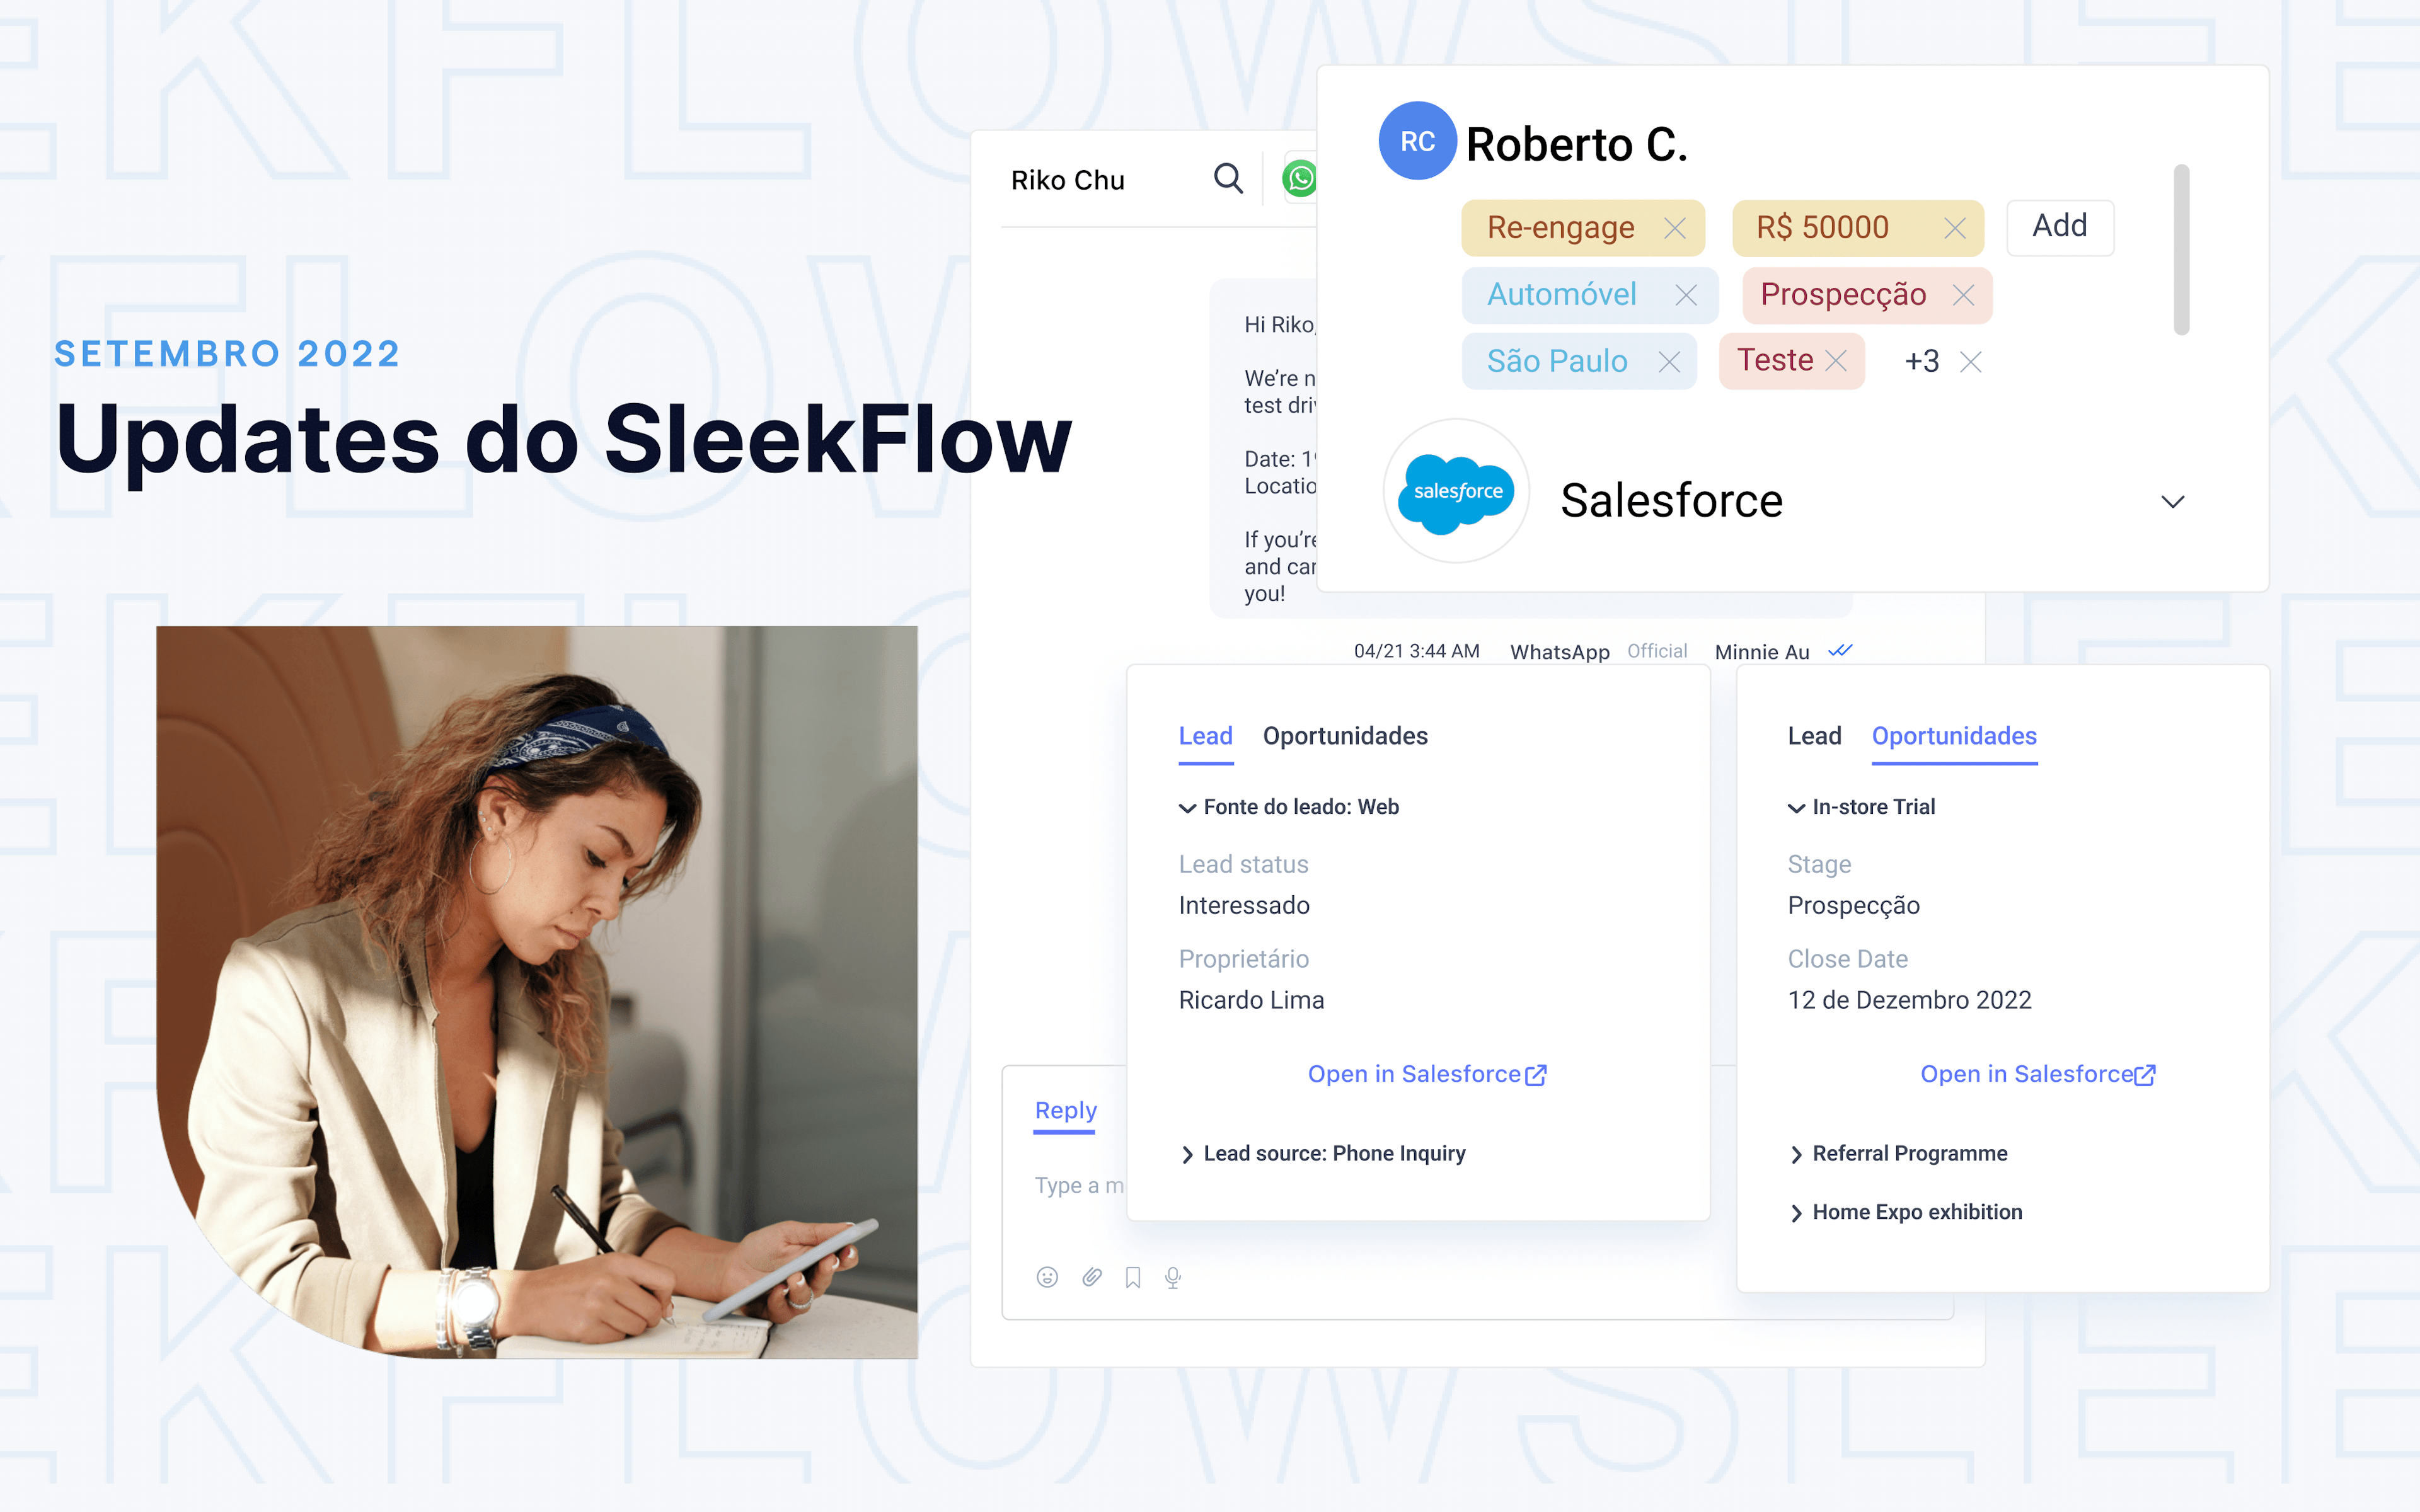 Updates de produto do SleekFlow